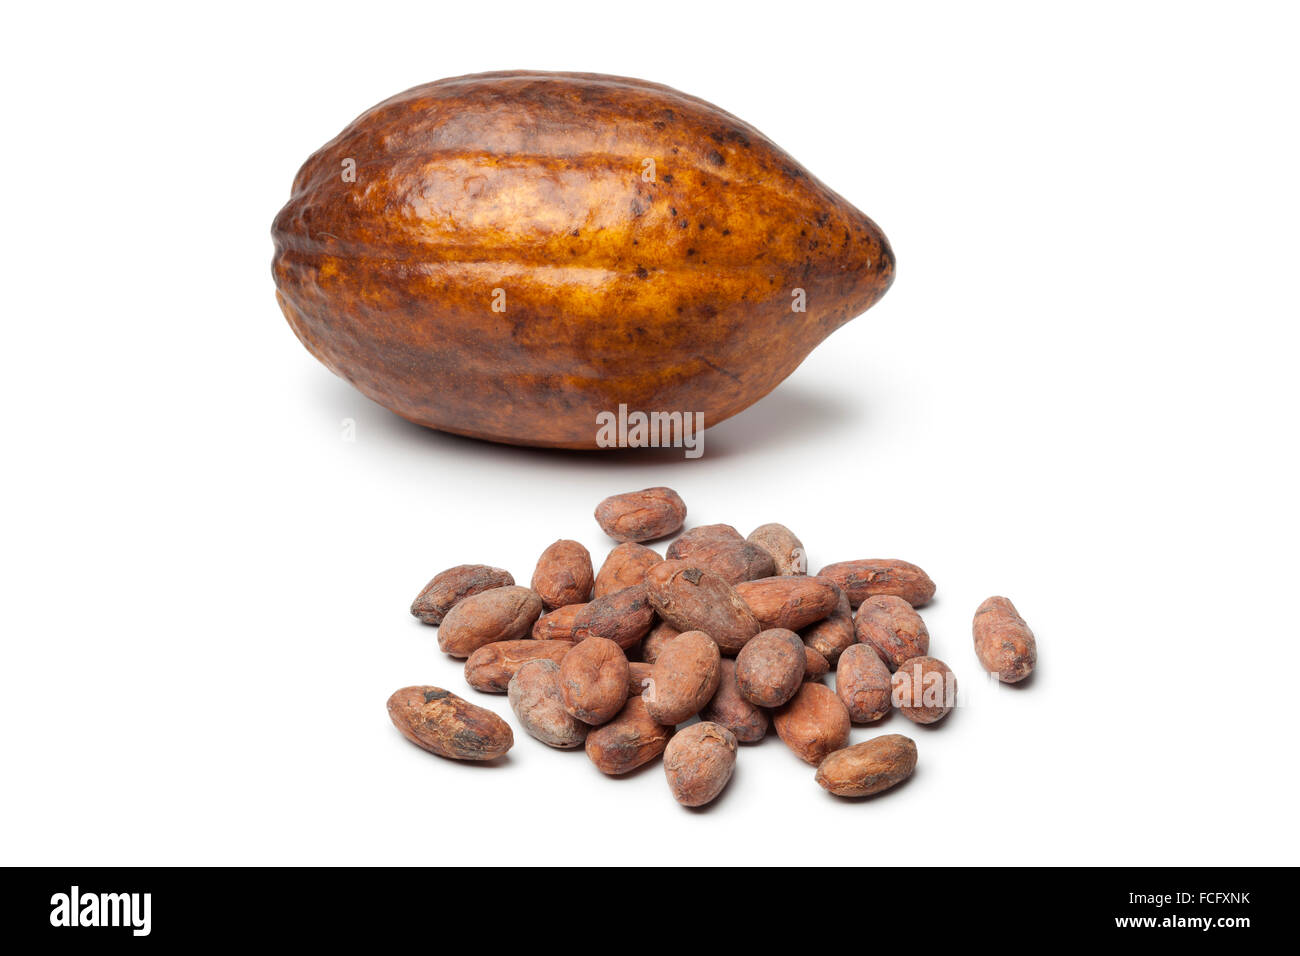 Fruits de cacao et cocao haricots sur fond blanc Banque D'Images